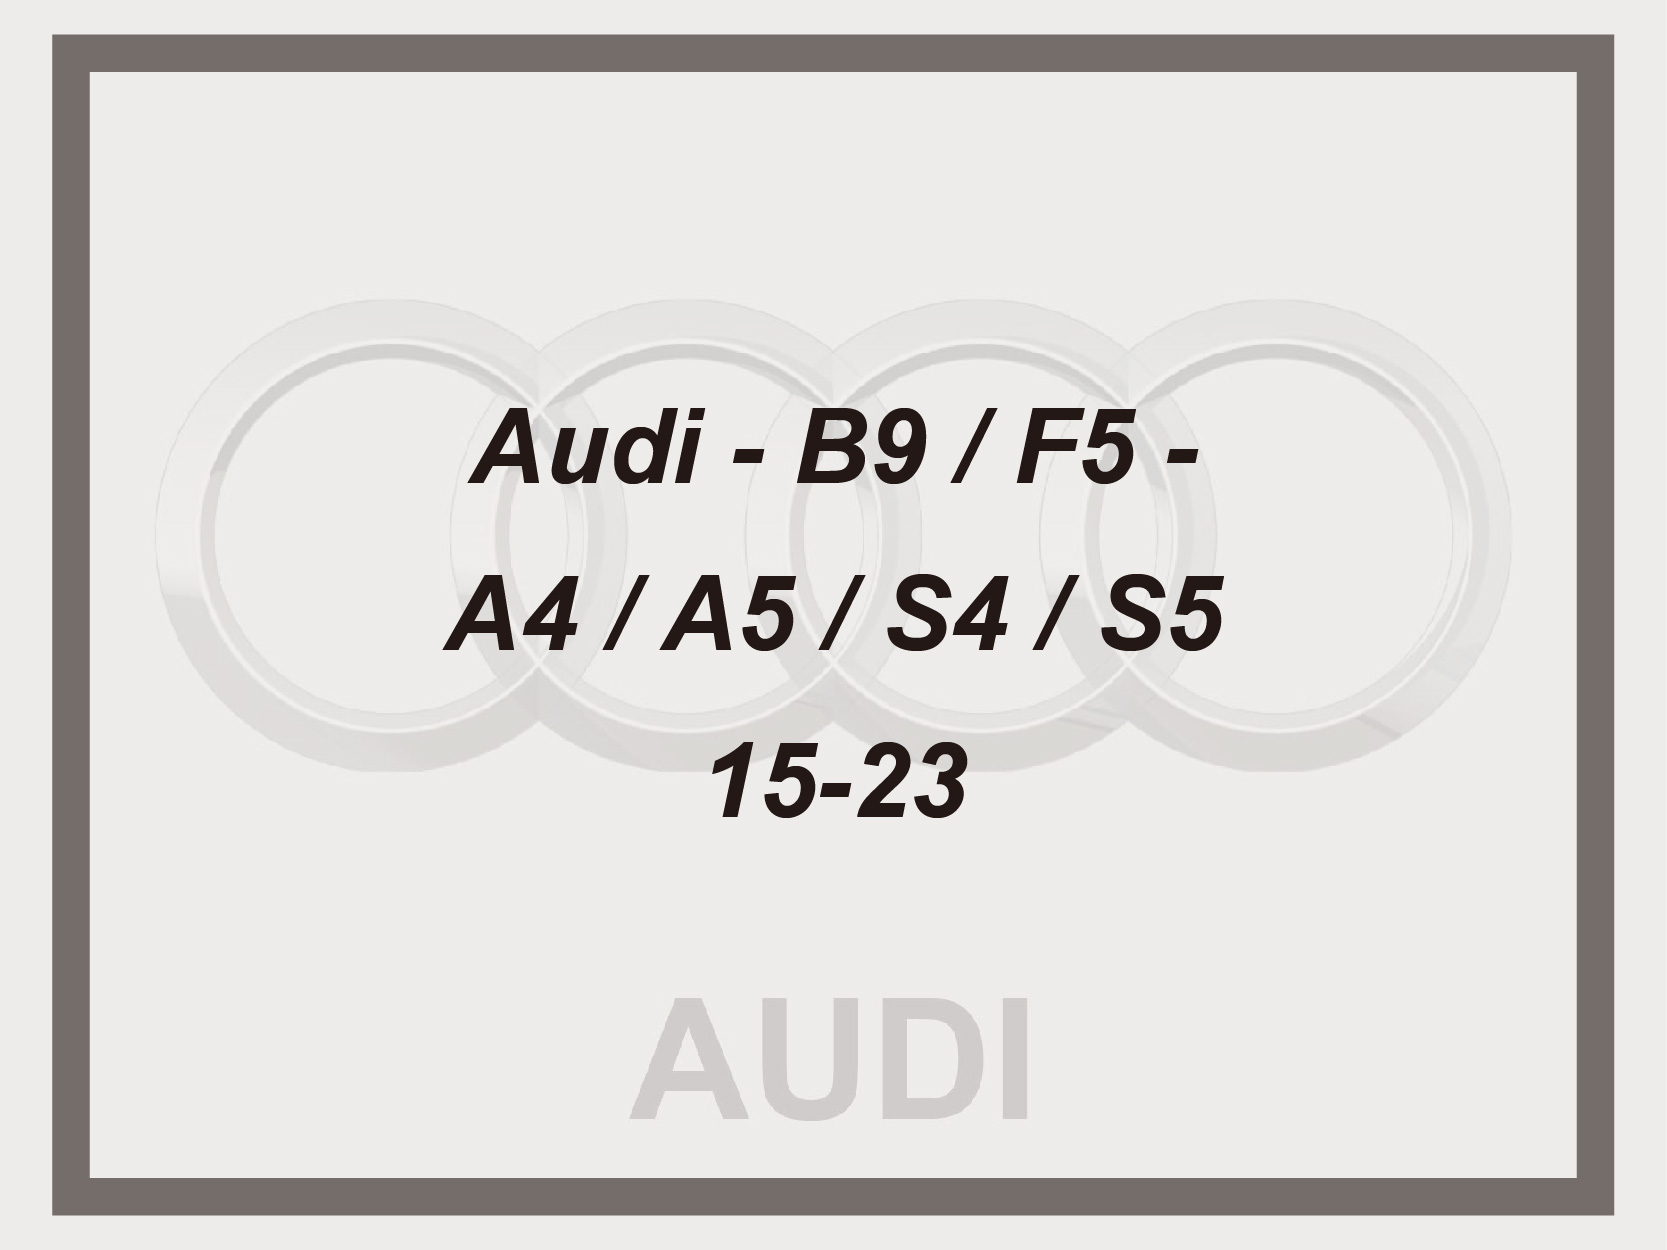 Audi - B9 / F5 - A4 / A5 / S4 / S5 - 15-23